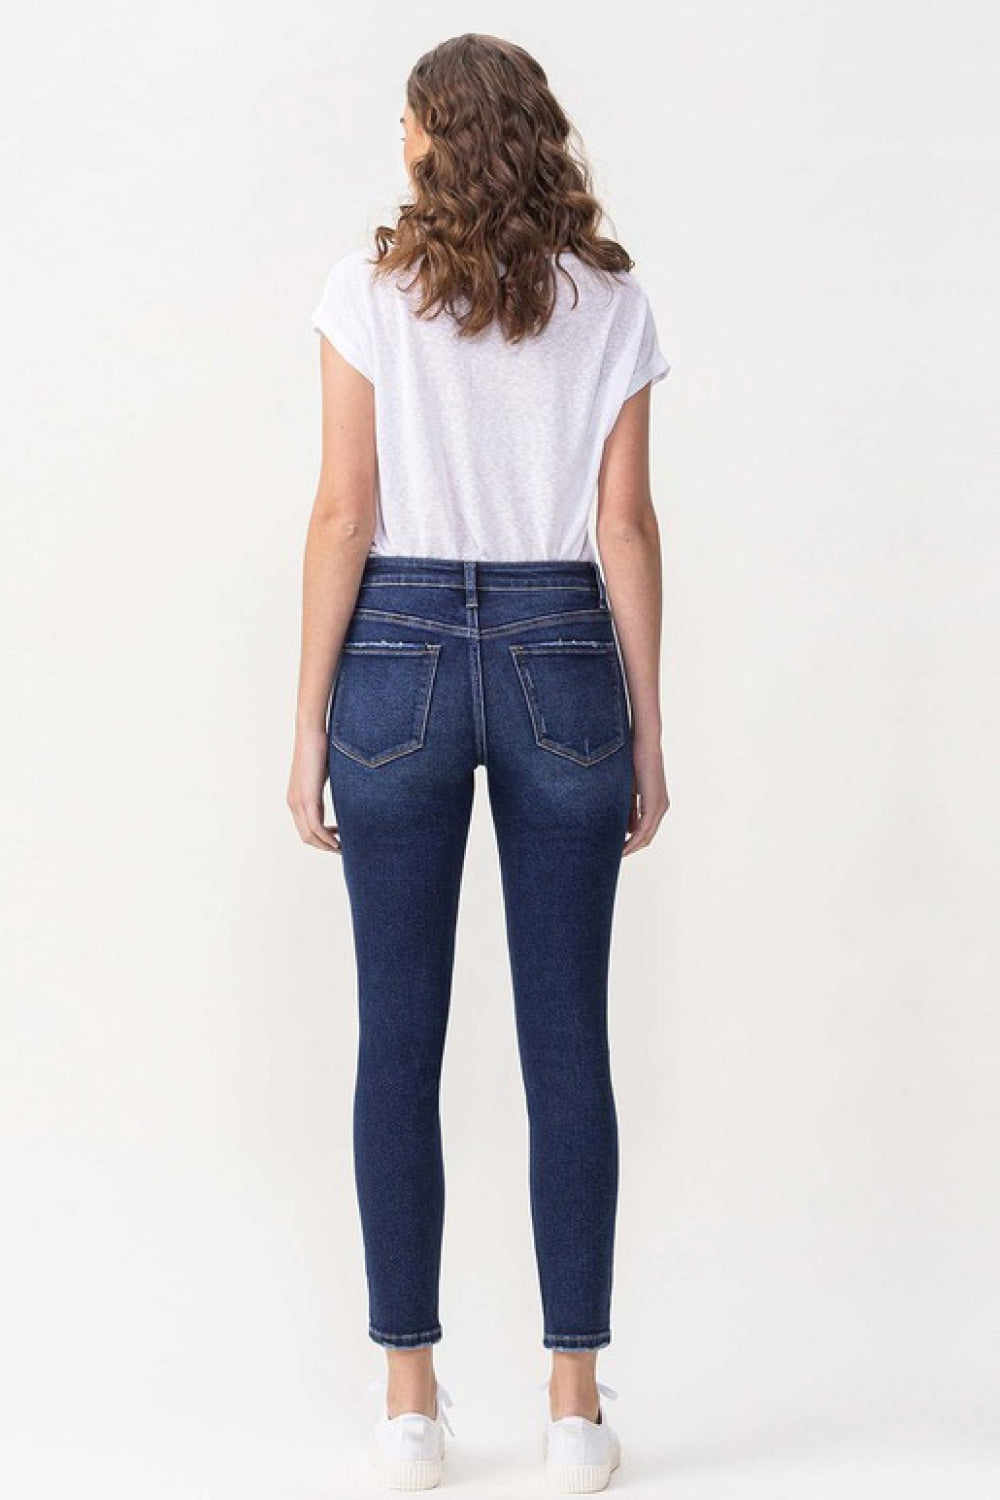 Lovervet Chelsea Skinny Jeans - Copper + Rose